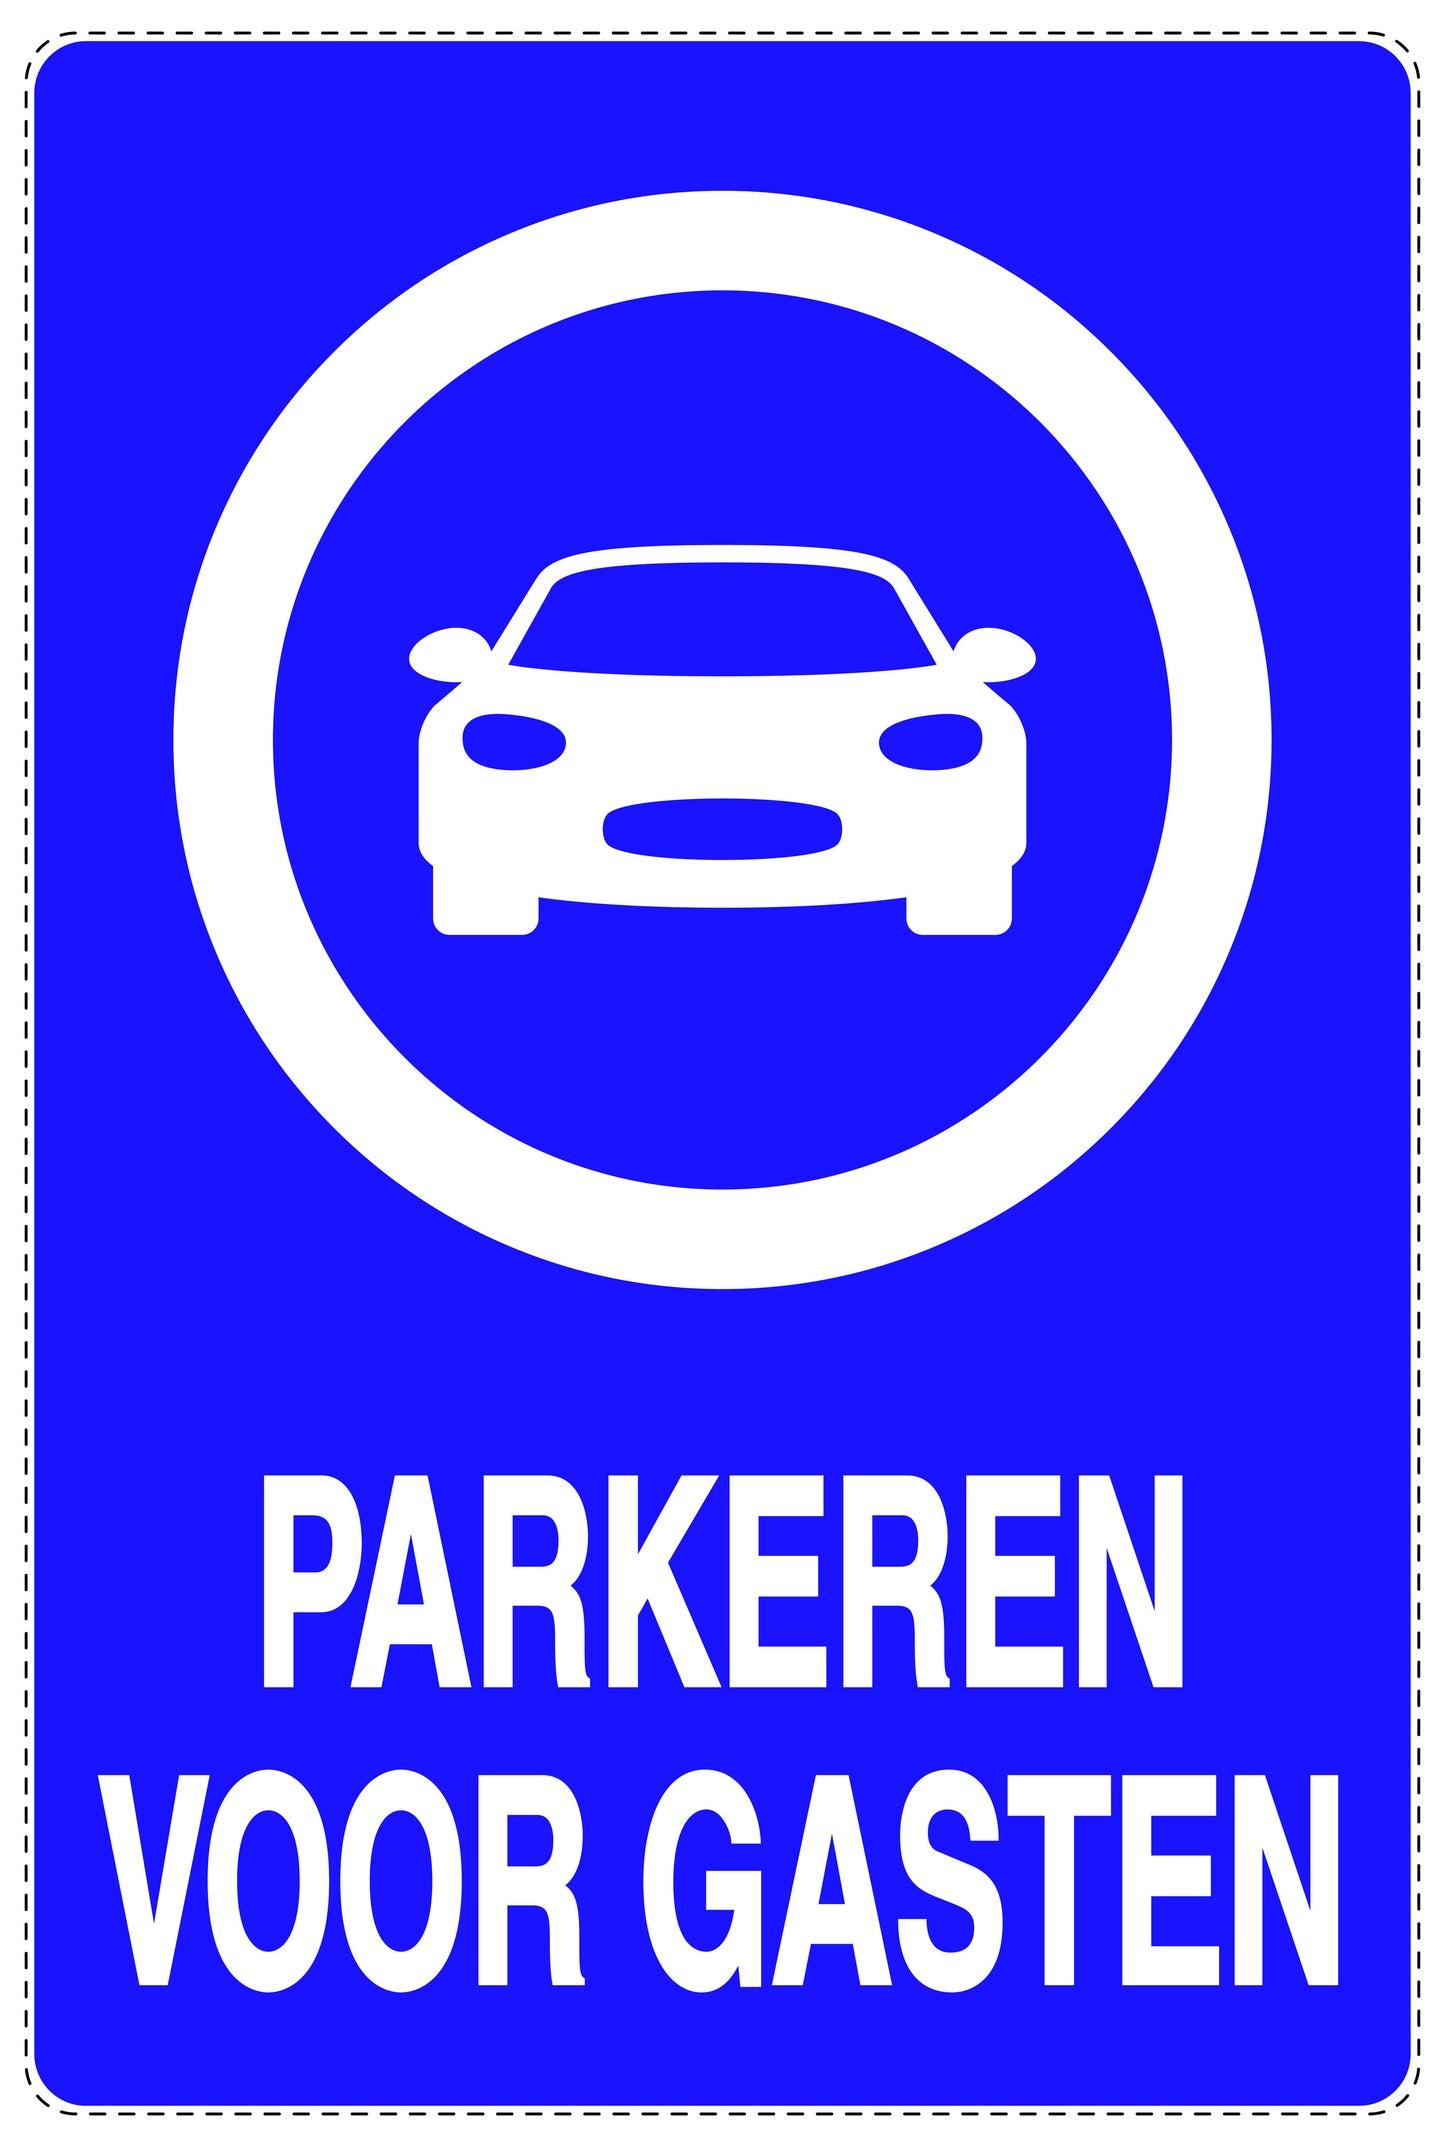 Niet parkeren Sticker "Parkeren voor gasten" EW-NPRK-2350-44